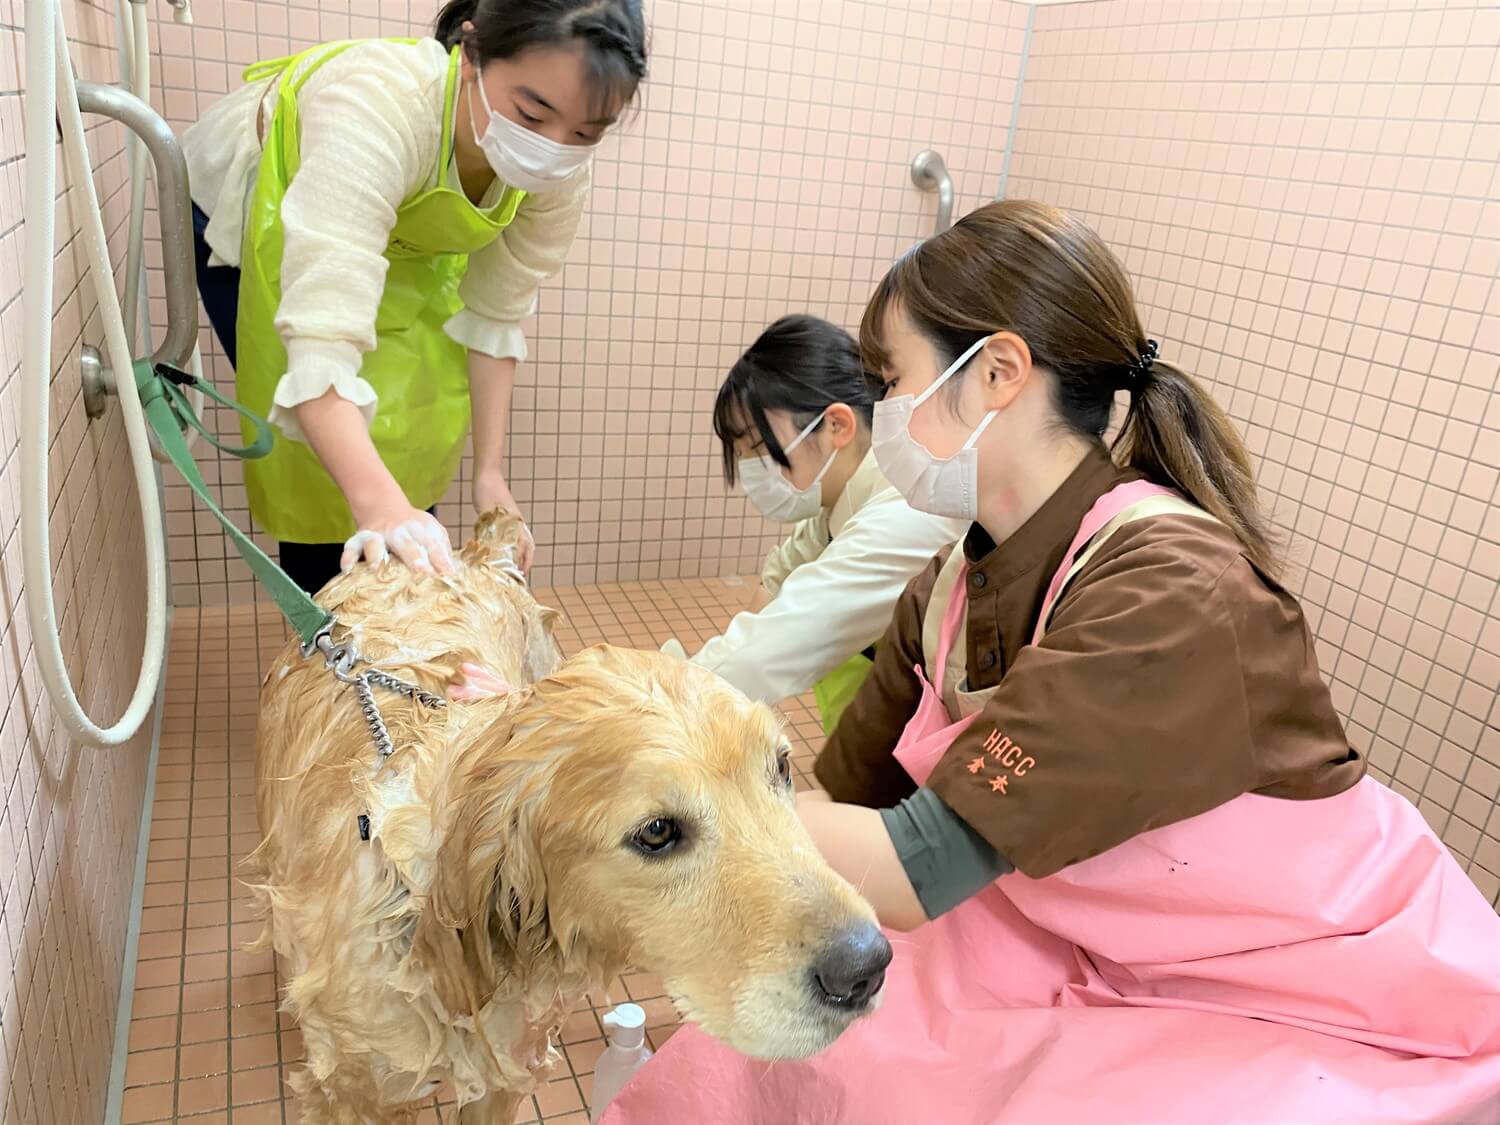 広島アニマルケア専門学校 広島で動物看護師 グルーマー ドッグトレーナーを目指すあなたの夢を強力サポート